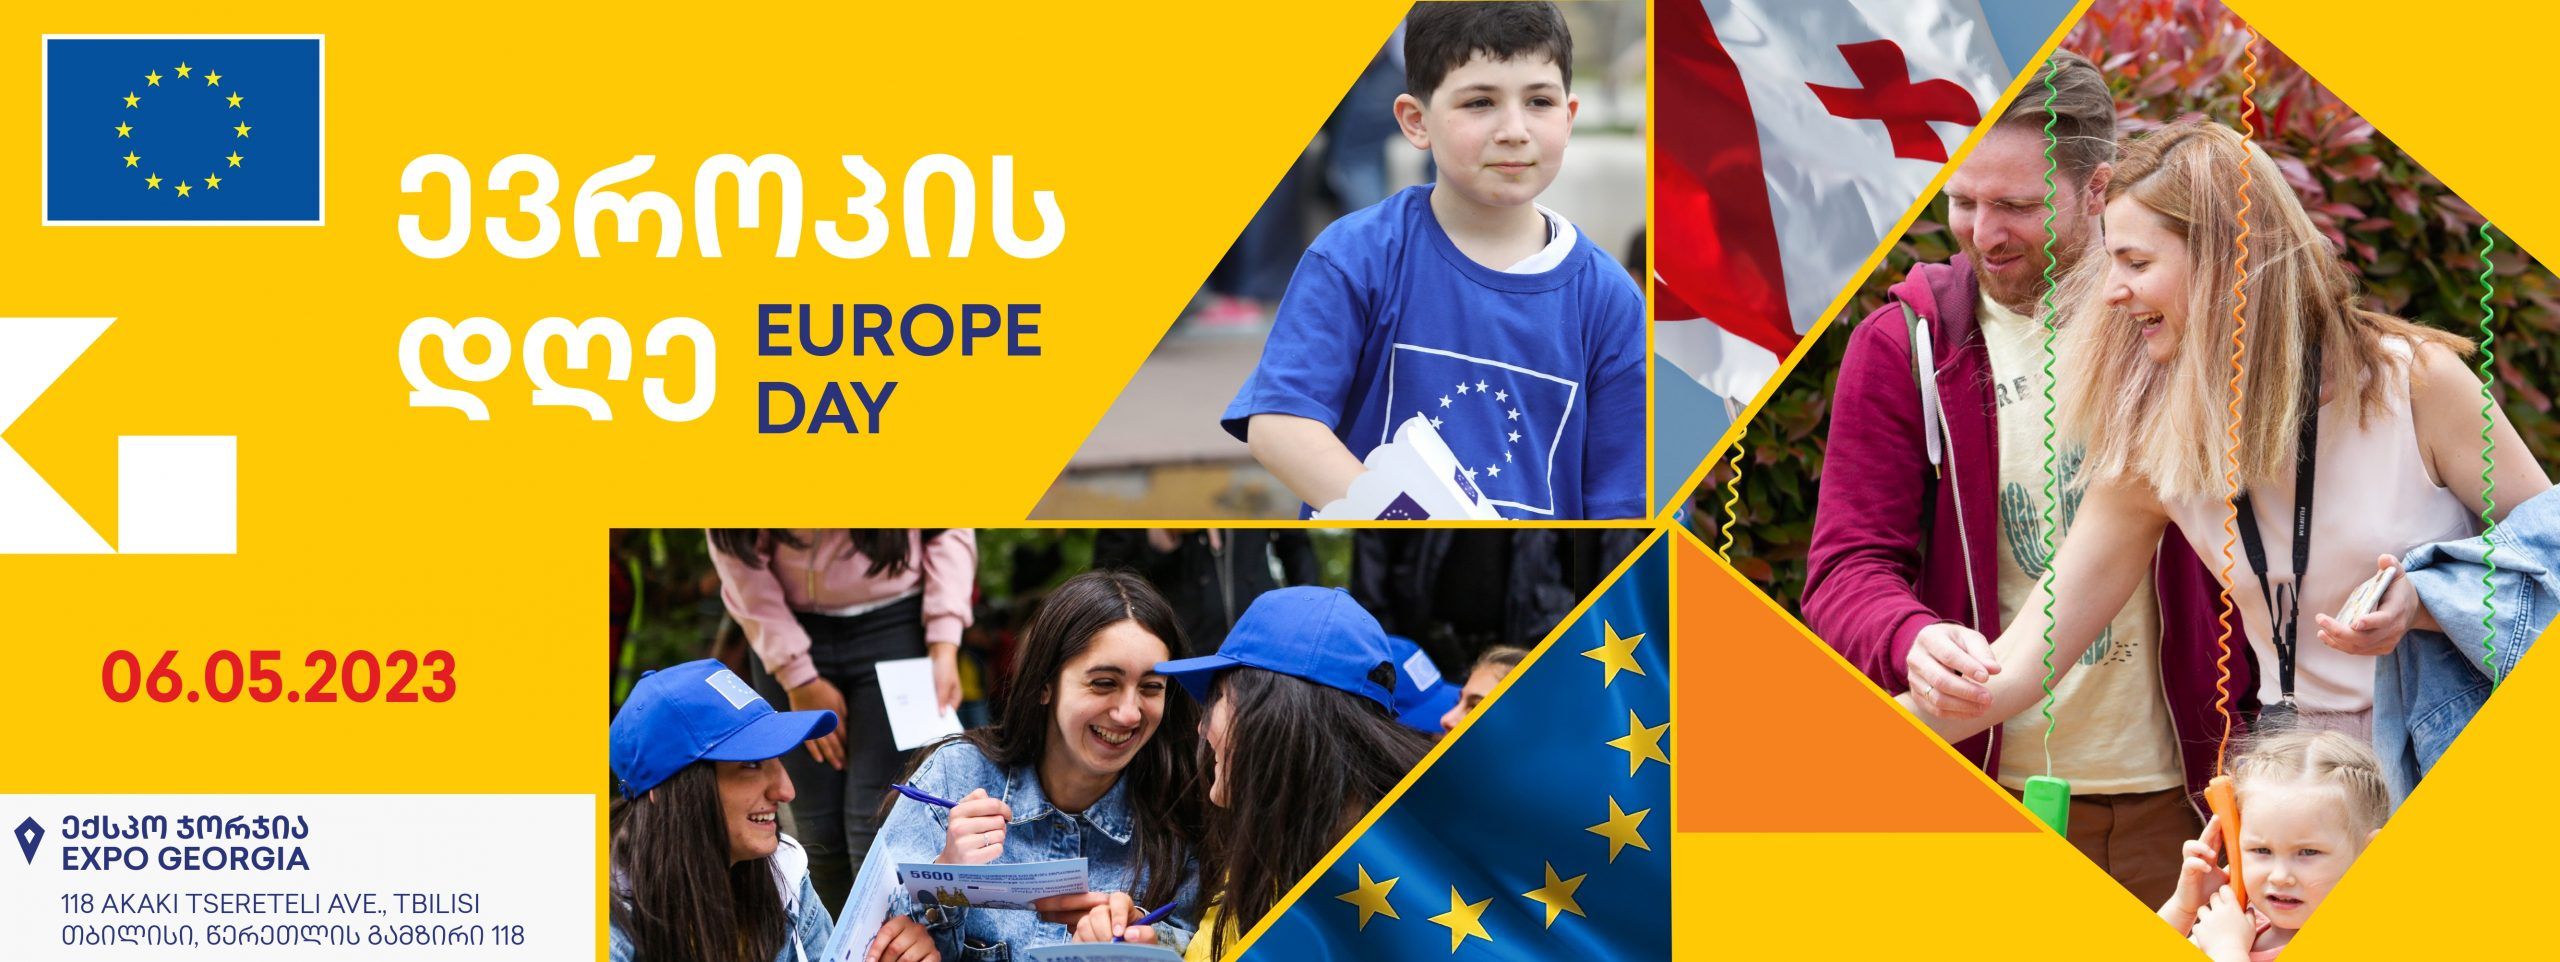 ევროპის დღე 2023 / Europe Day 2023